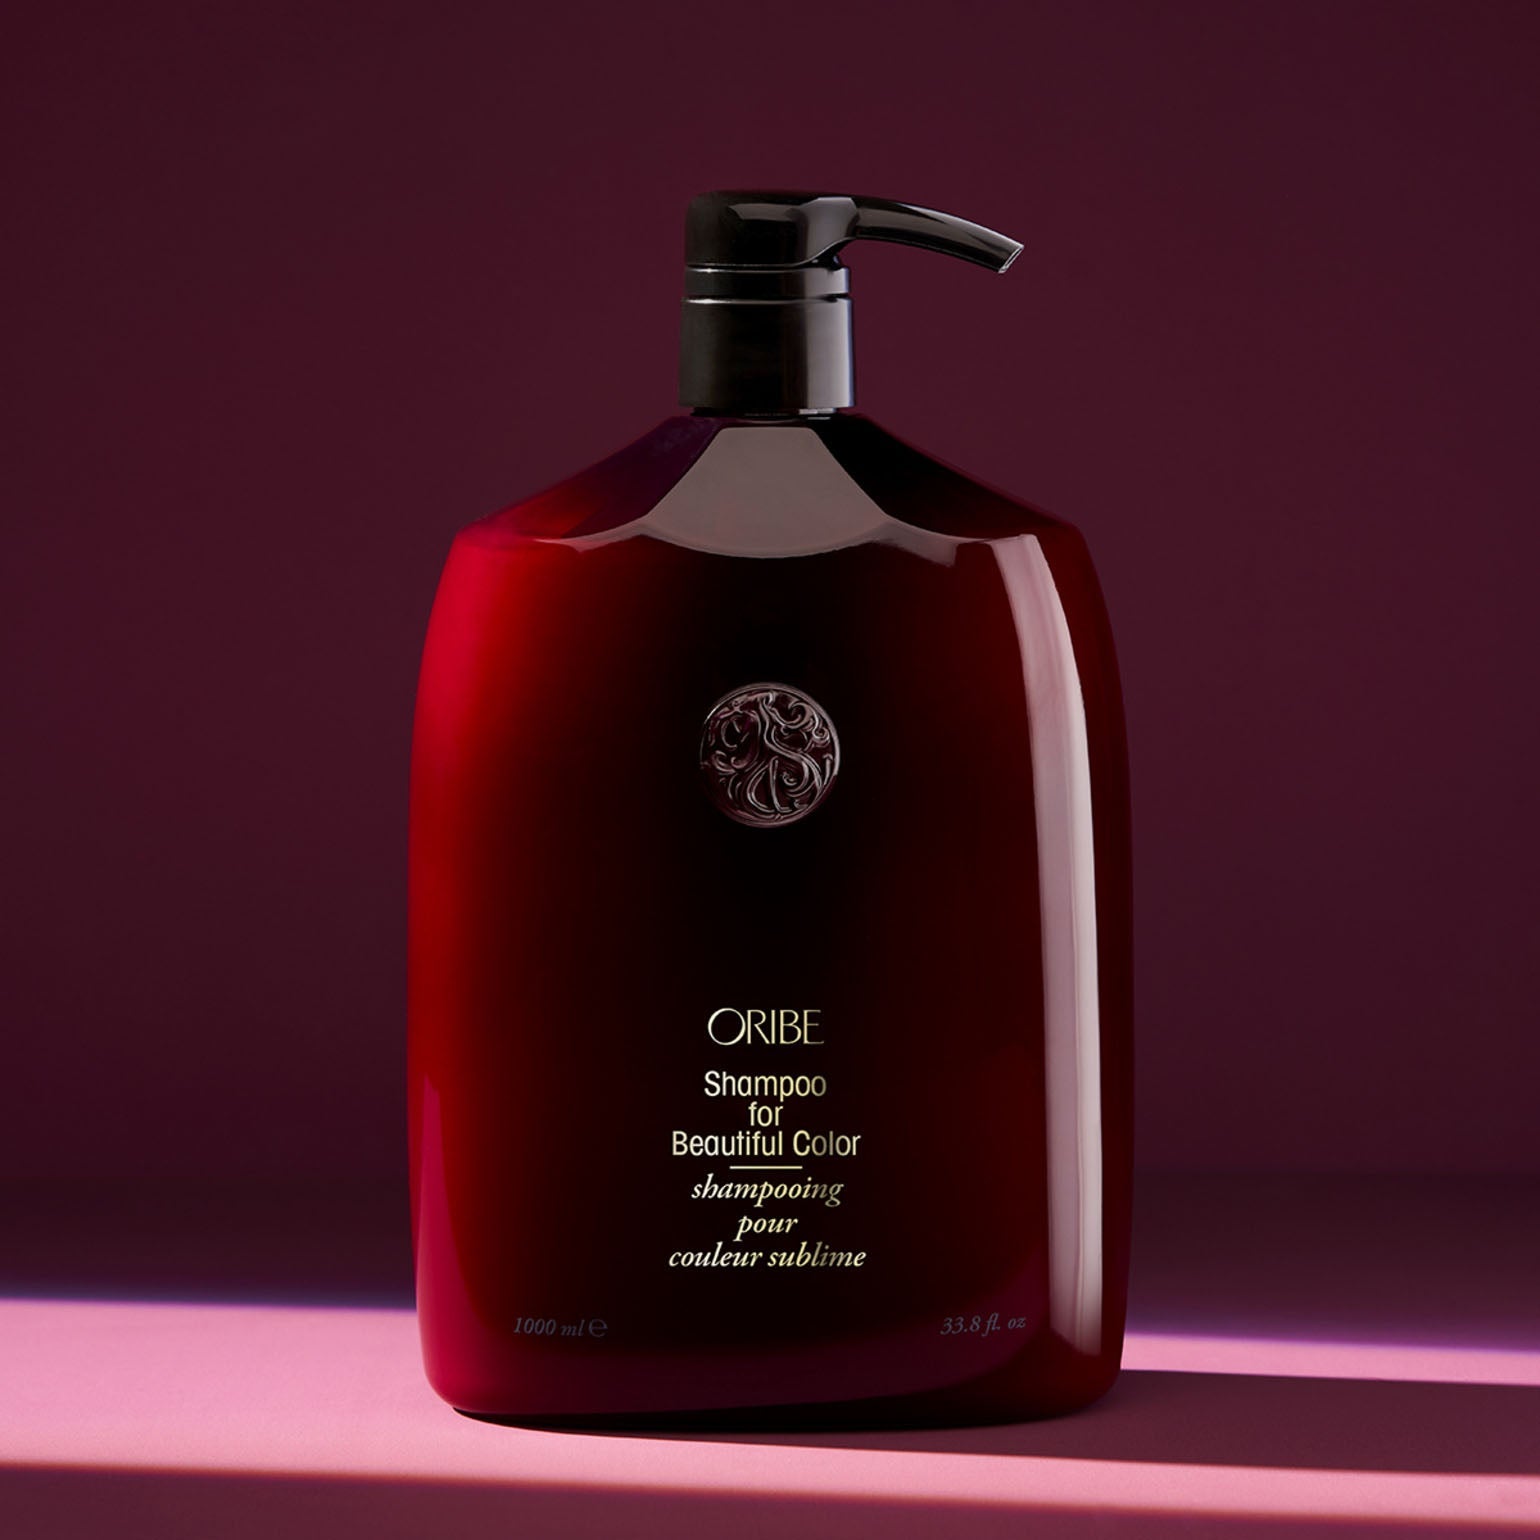 Oribe. Shampoing pour Couleur Sublime - 1000 ml - Concept C. Shop